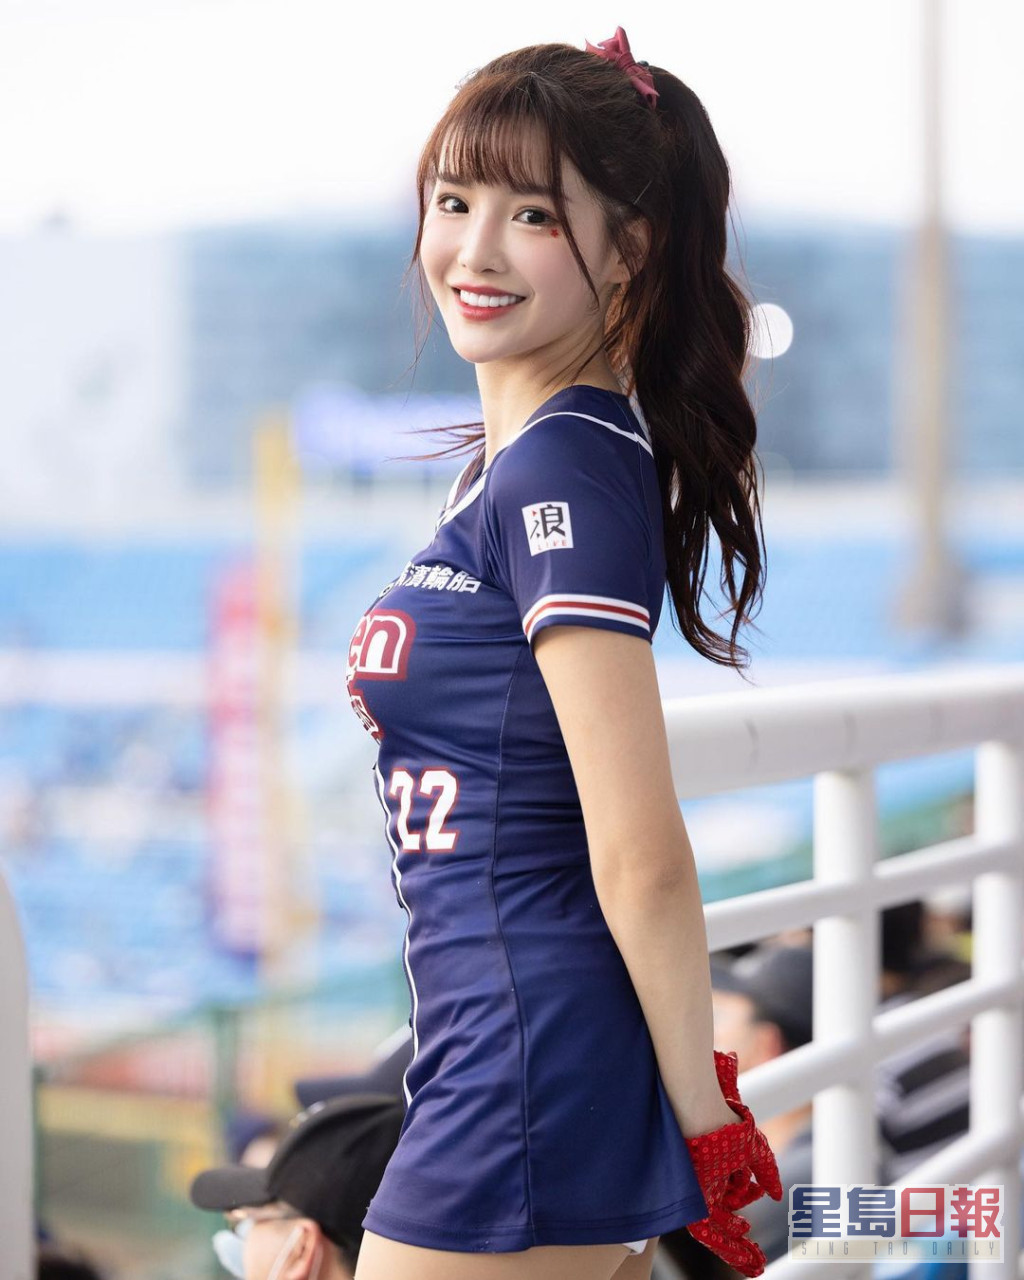 現年26歲的「菲菲」李庭瑀是樂天女孩（Rakuten Girls）現任副隊長。